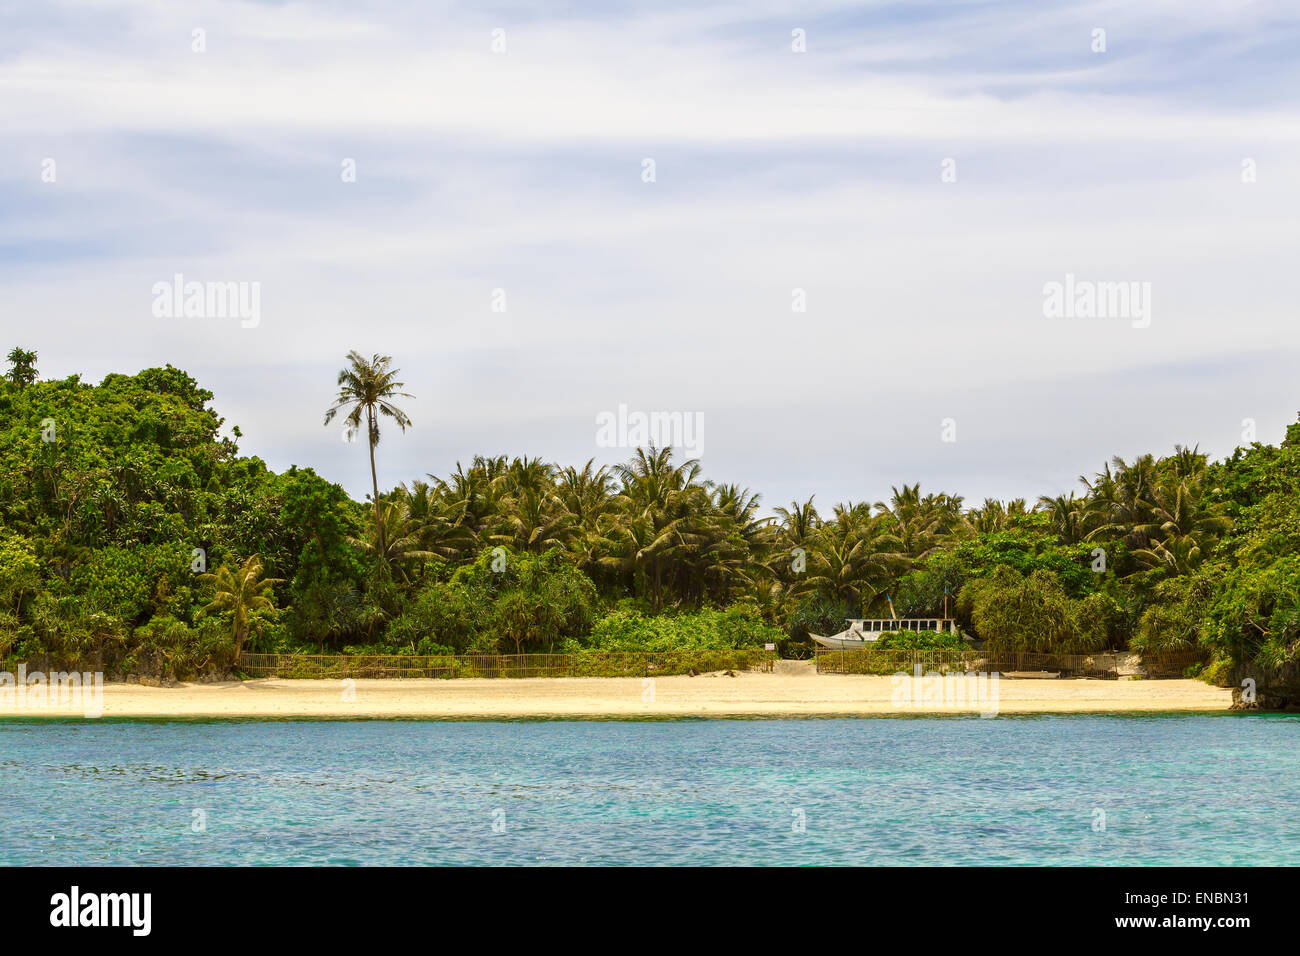 Grüne tropische Insel mit Palmen auf gelben Felsstrand mit Steinen im blauen Meer, Philippinen Boracay island Stockfoto